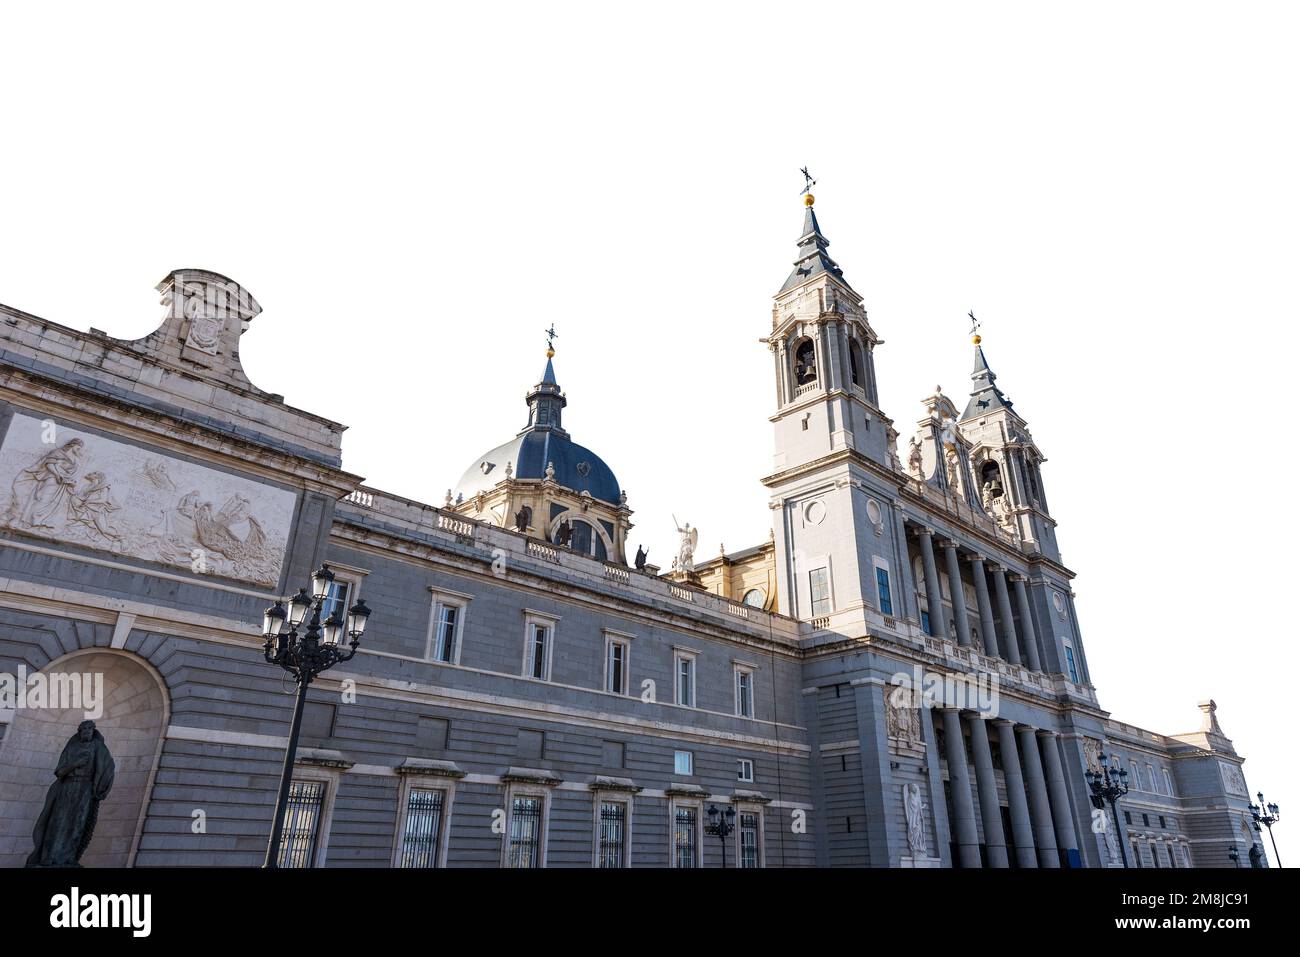 Facciata della Cattedrale dell'Almudena, isolata su sfondo bianco, (Catedral de Santa Maria la Real de la Almudena) nel centro di Madrid, Spagna, Europa. Foto Stock